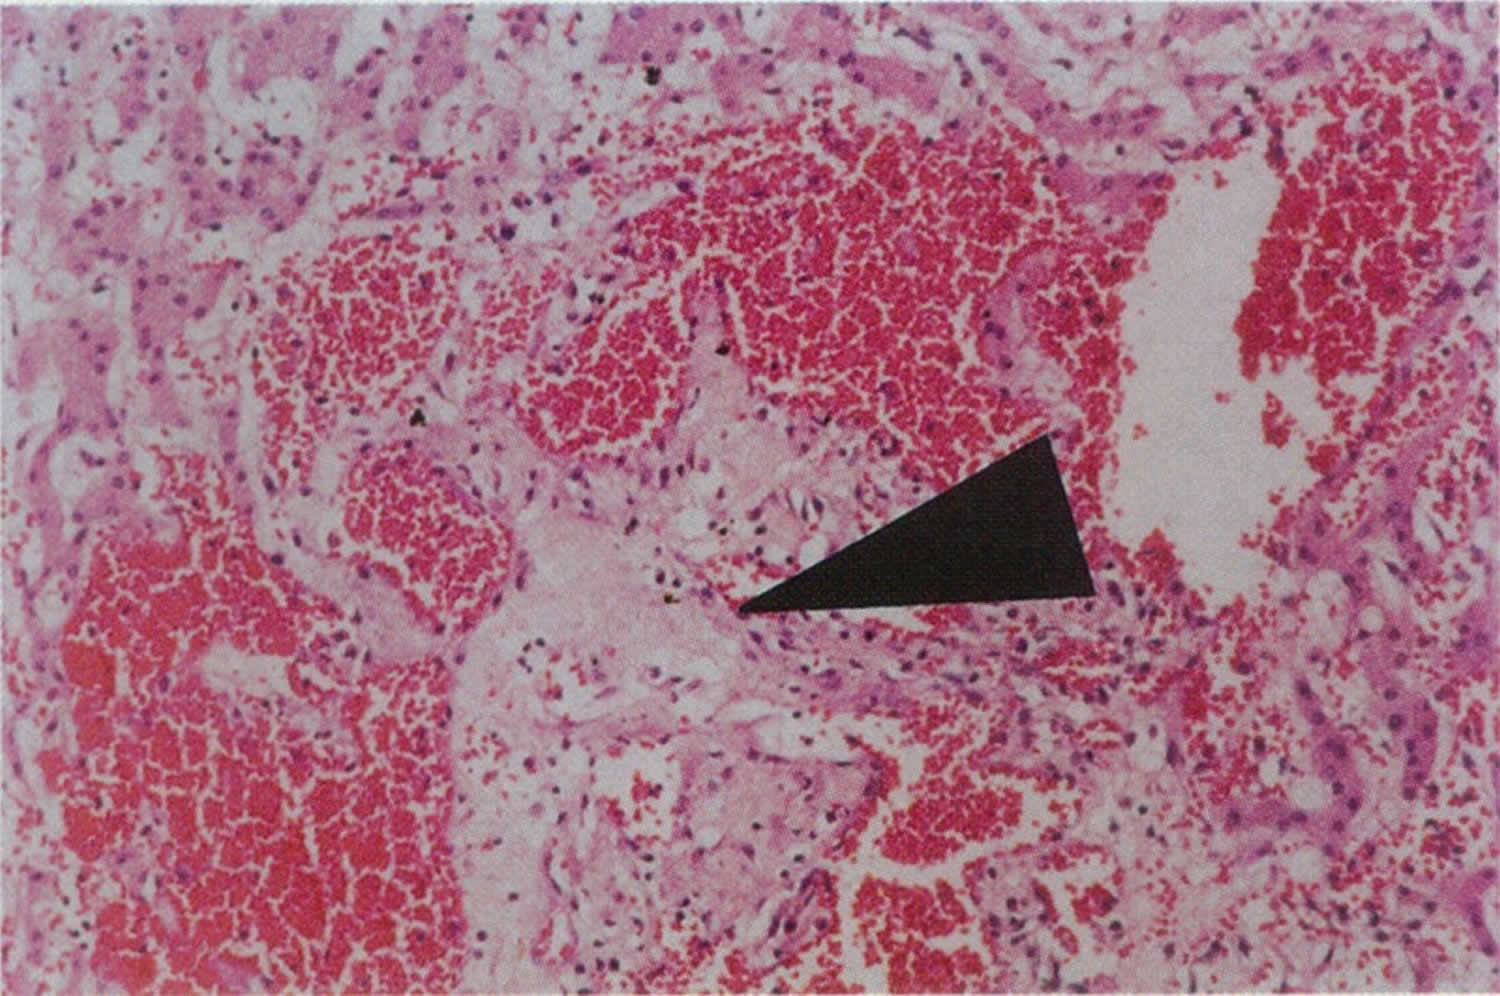 Peliosis hepatis liver biopsy specimen